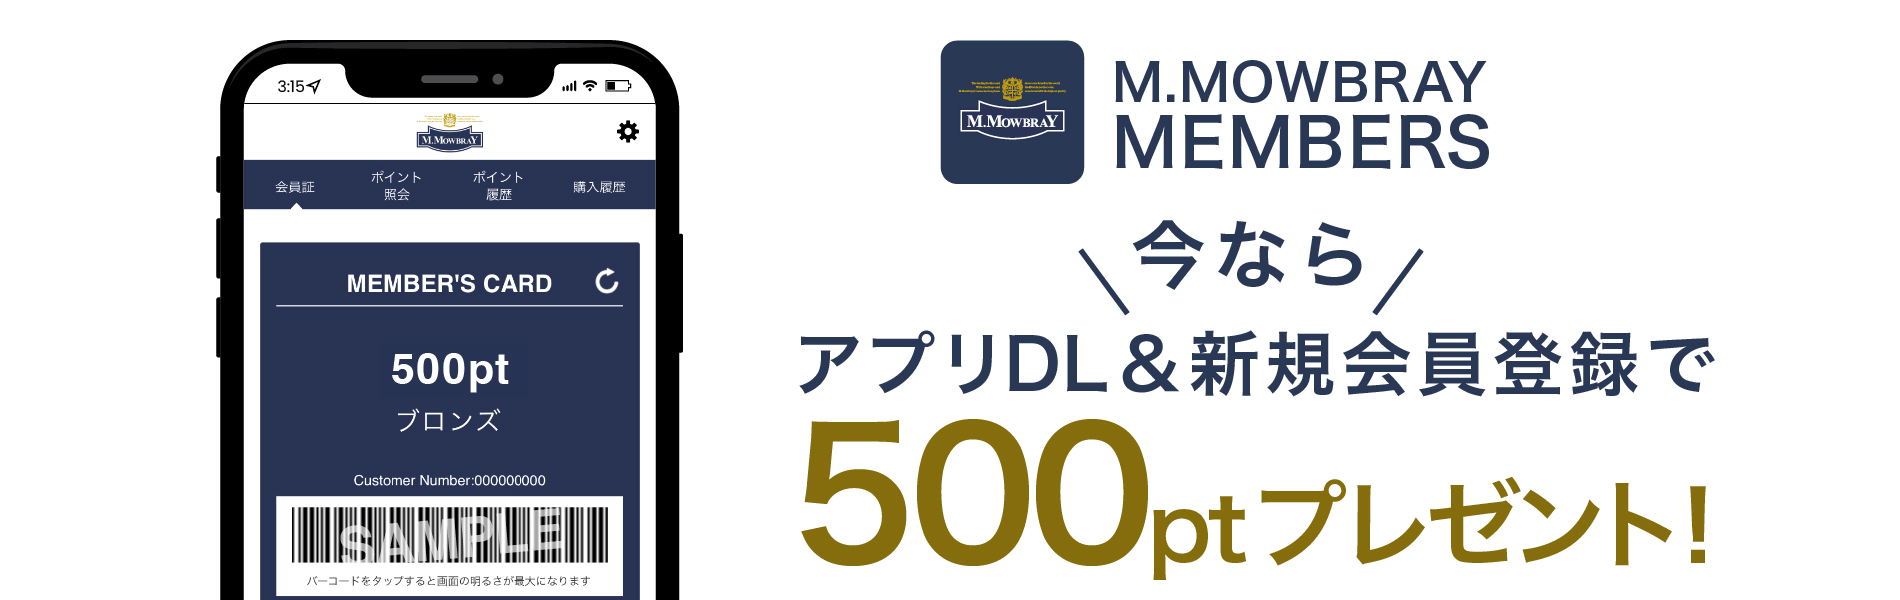 M.MOWBRAYメンバーズアプリのダウンロードキャンペーン